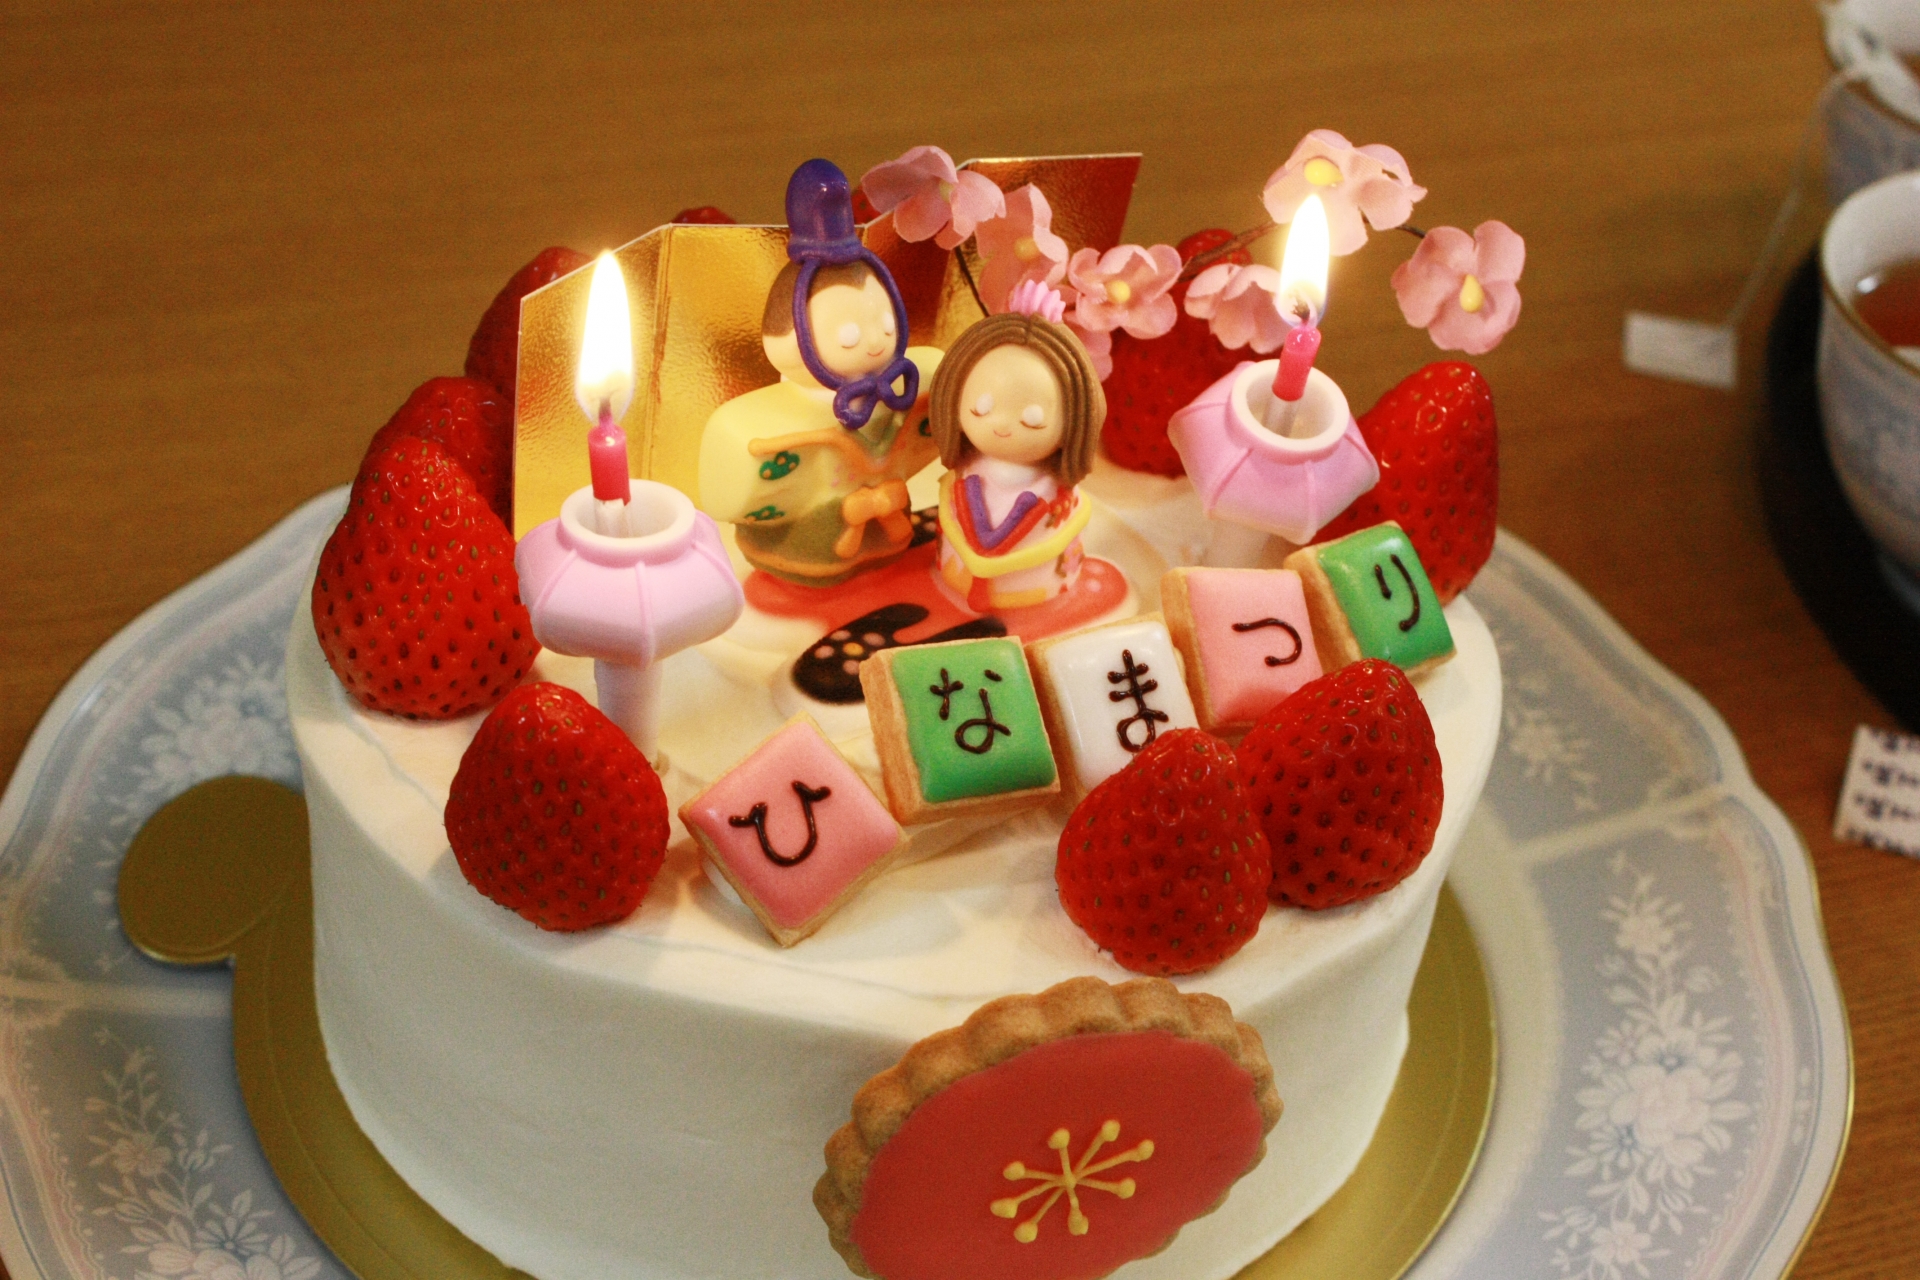 今年のひな祭りケーキは買う 作る 都内で買えるひな祭りケーキとひな祭りケーキレシピ30選 東京イベントプラス 親子で楽しいお得な週末お出かけ情報